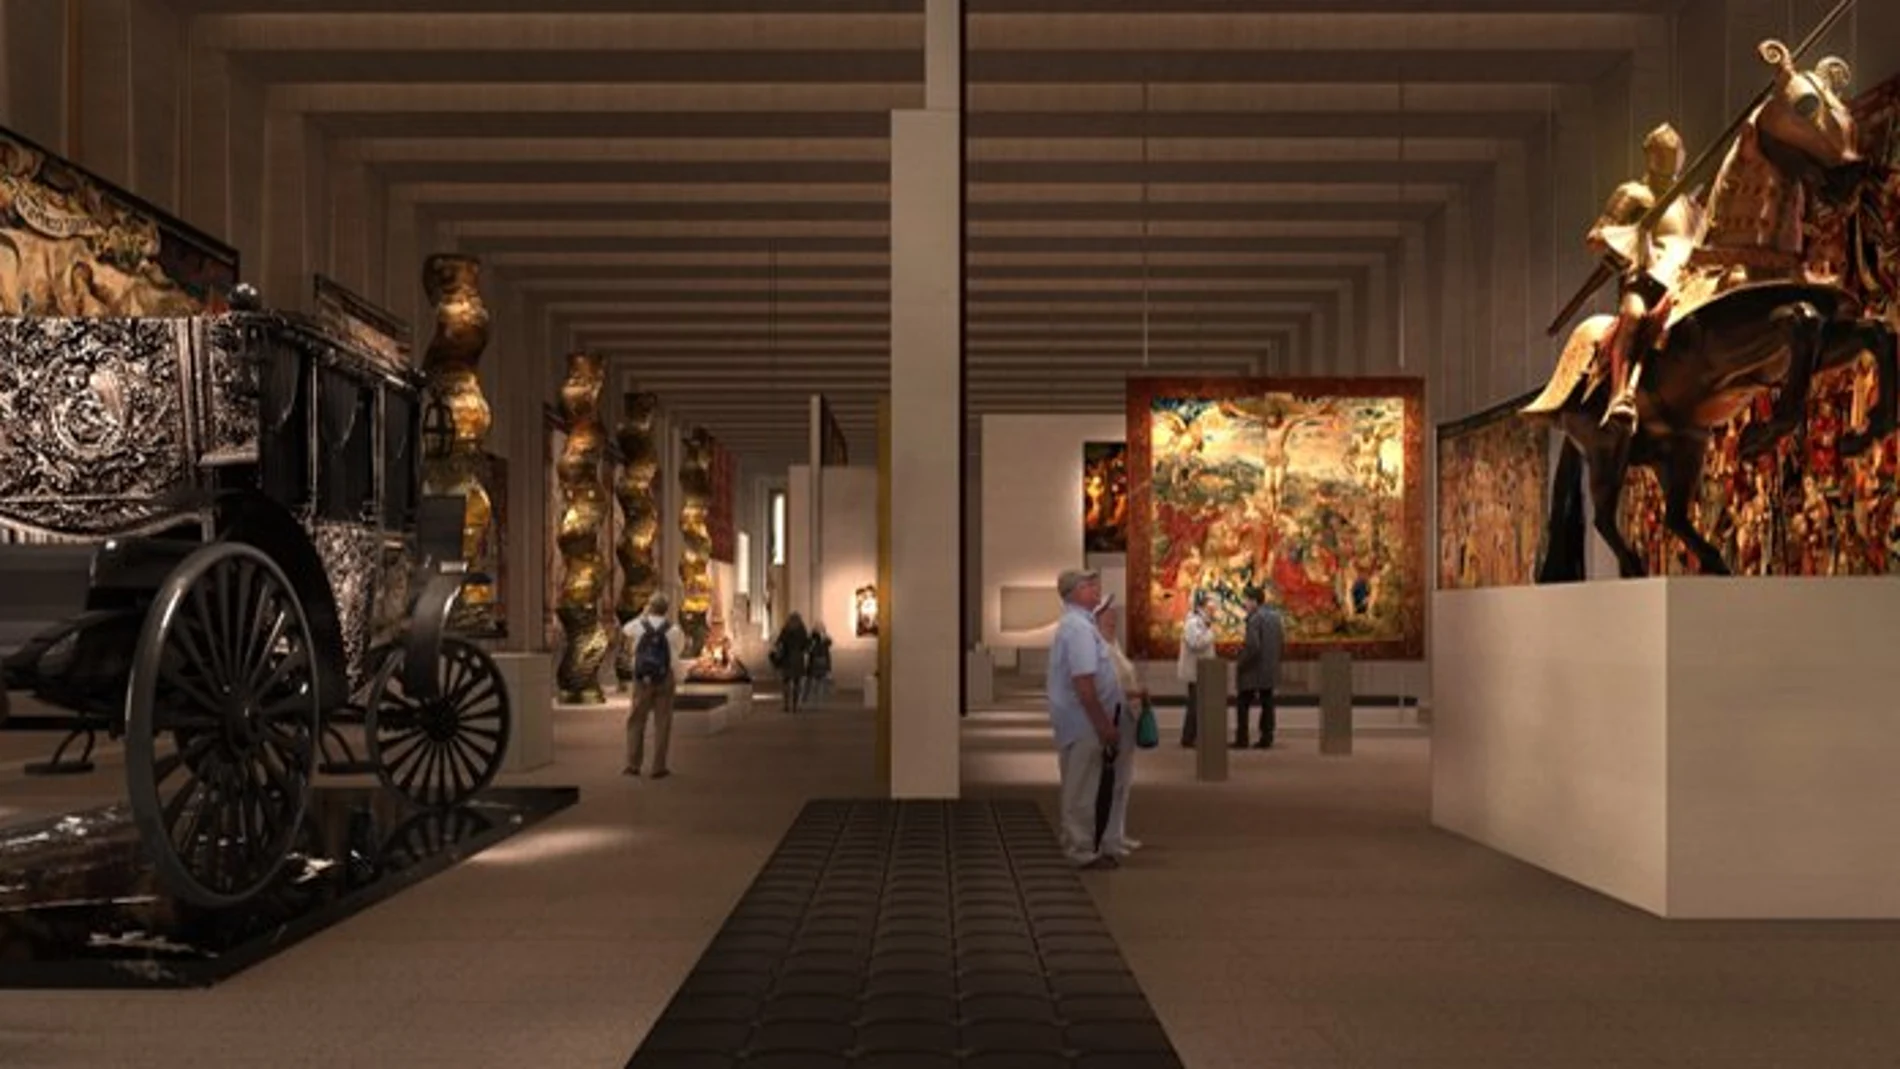 Reconstrucción de las salas de las Colecciones Reales de Madrid, según Patrimonio Nacional